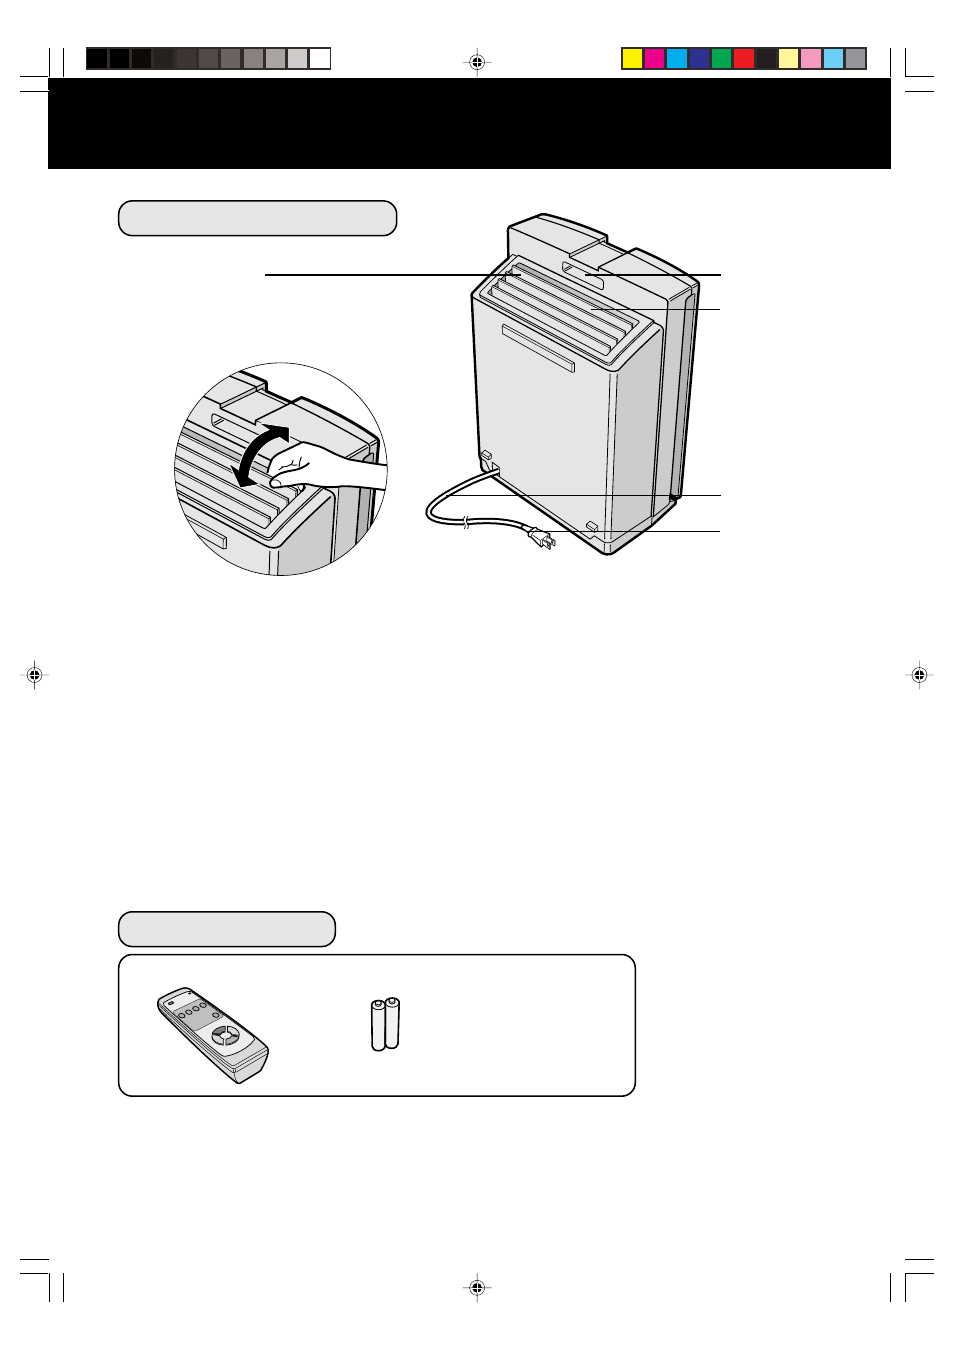 Dos de l’appareil, Accessoires, Désignation des pièces | Sharp FP-N60CX Manuel d'utilisation | Page 34 / 48